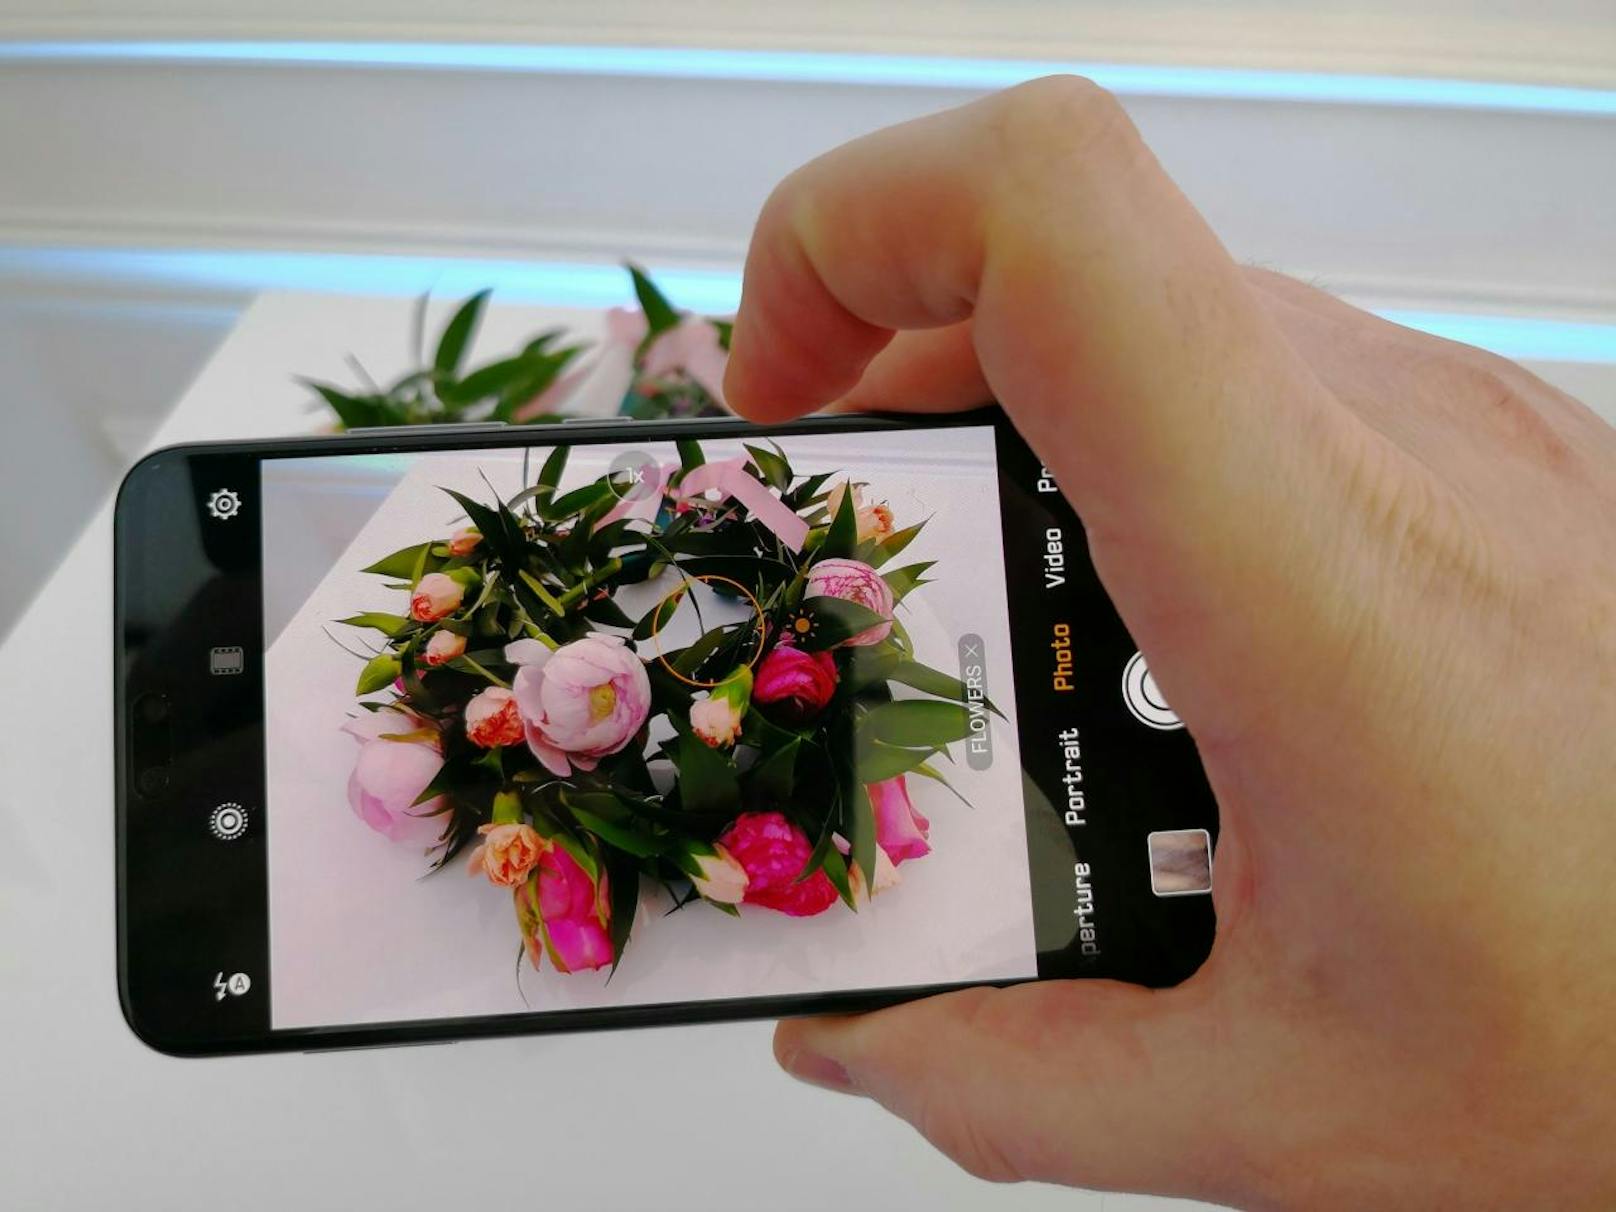 Huawei hat die neue Smartphone-Serie P20 in Paris samt Weltneuheit präsentiert. "Heute" konnte das Spitzenmodell P20 Pro mit Dreifach-Kamera testen.